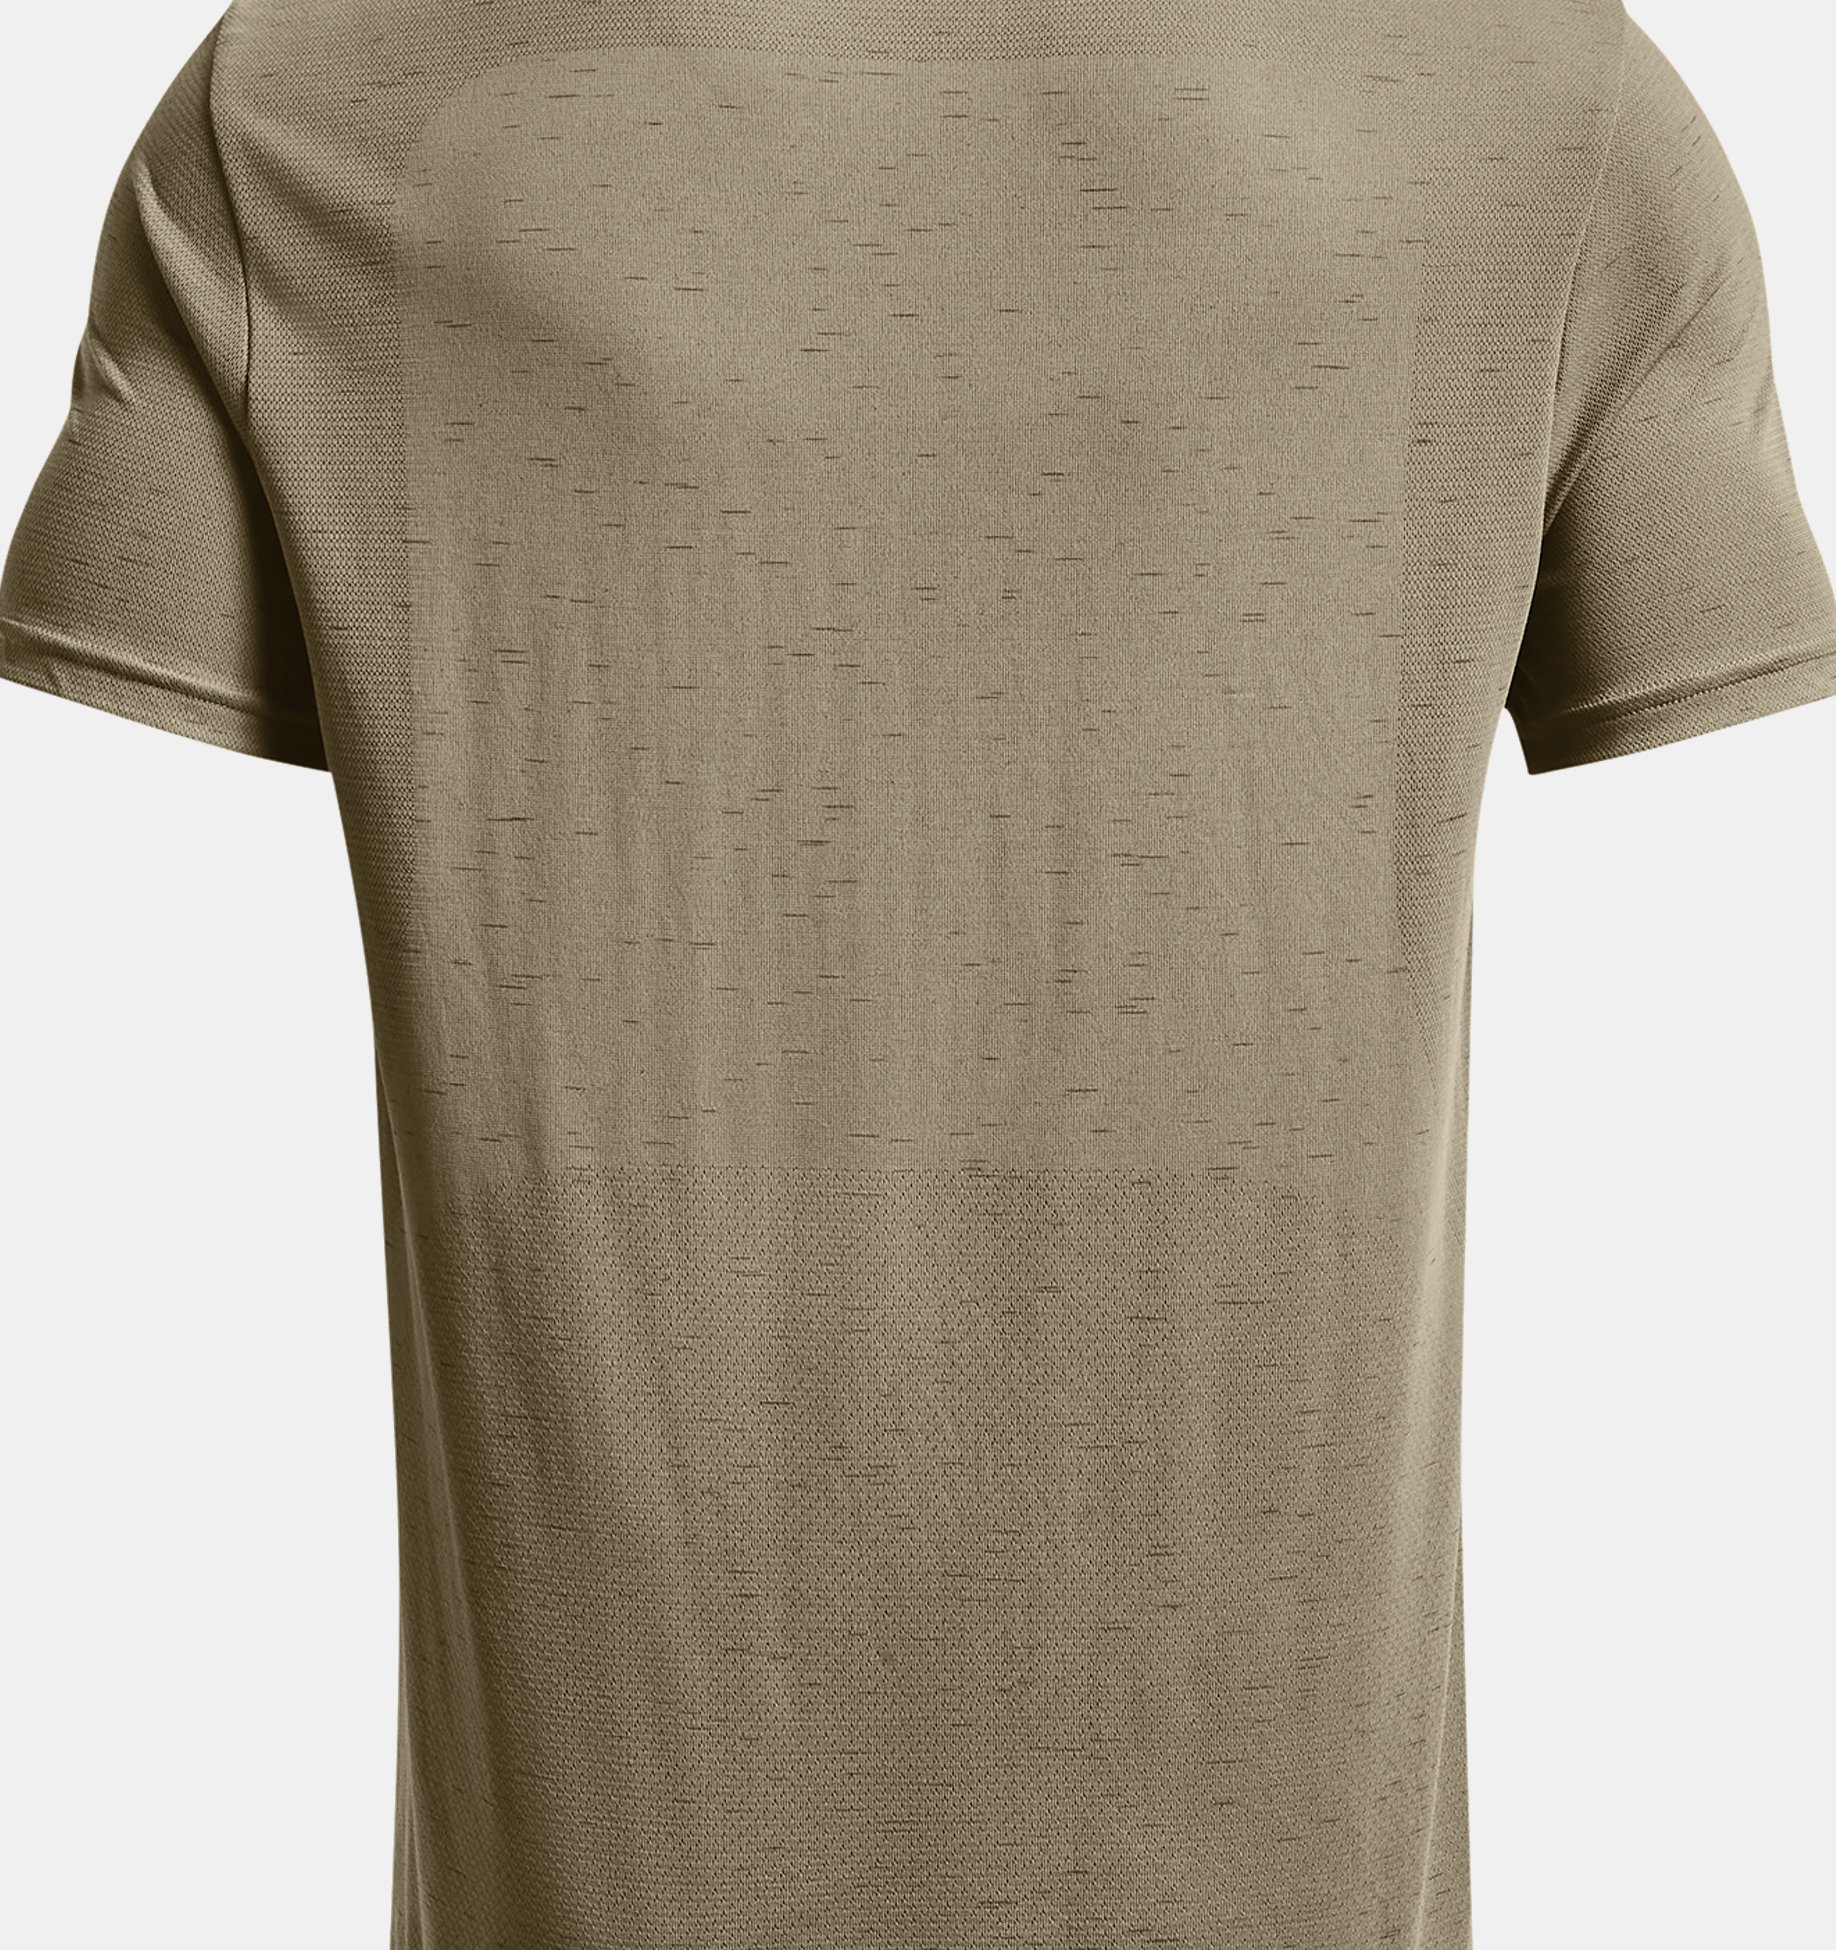  SEAMLESS STRIDE SS-GRN - men's t-shirt - UNDER ARMOUR -  47.49 € - outdoorové oblečení a vybavení shop